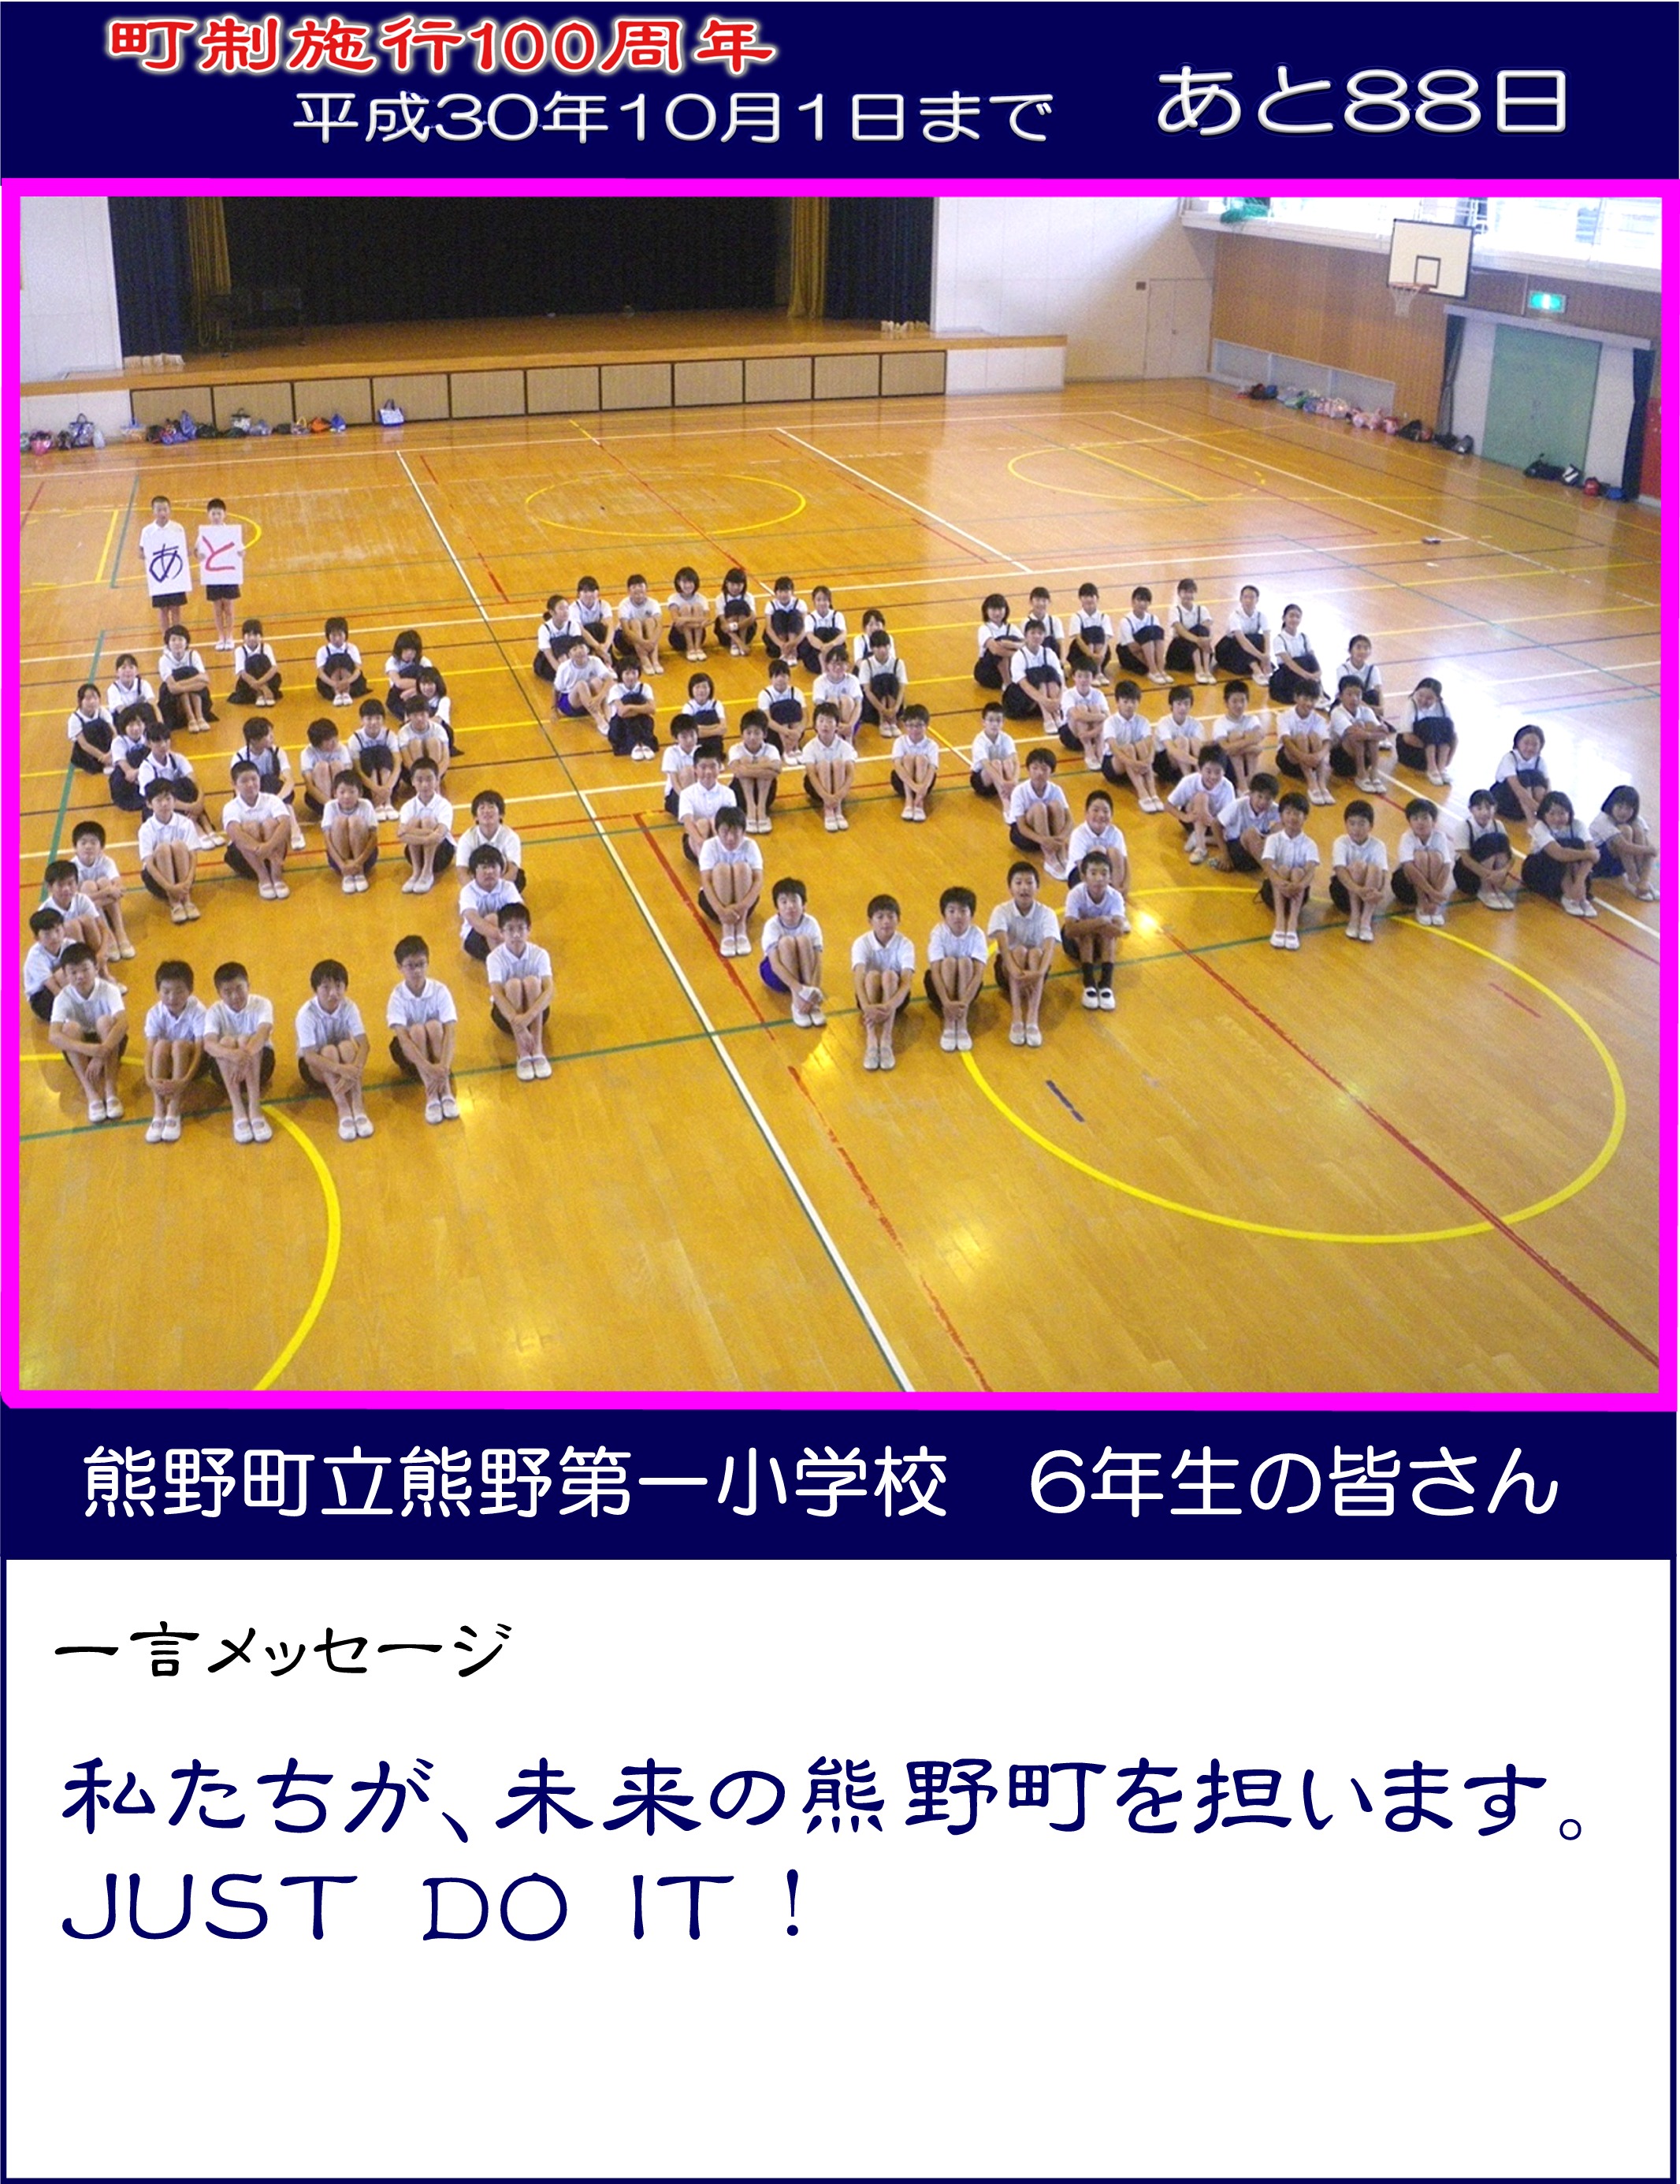 カウントダウン写真熊野第一小学校6年生